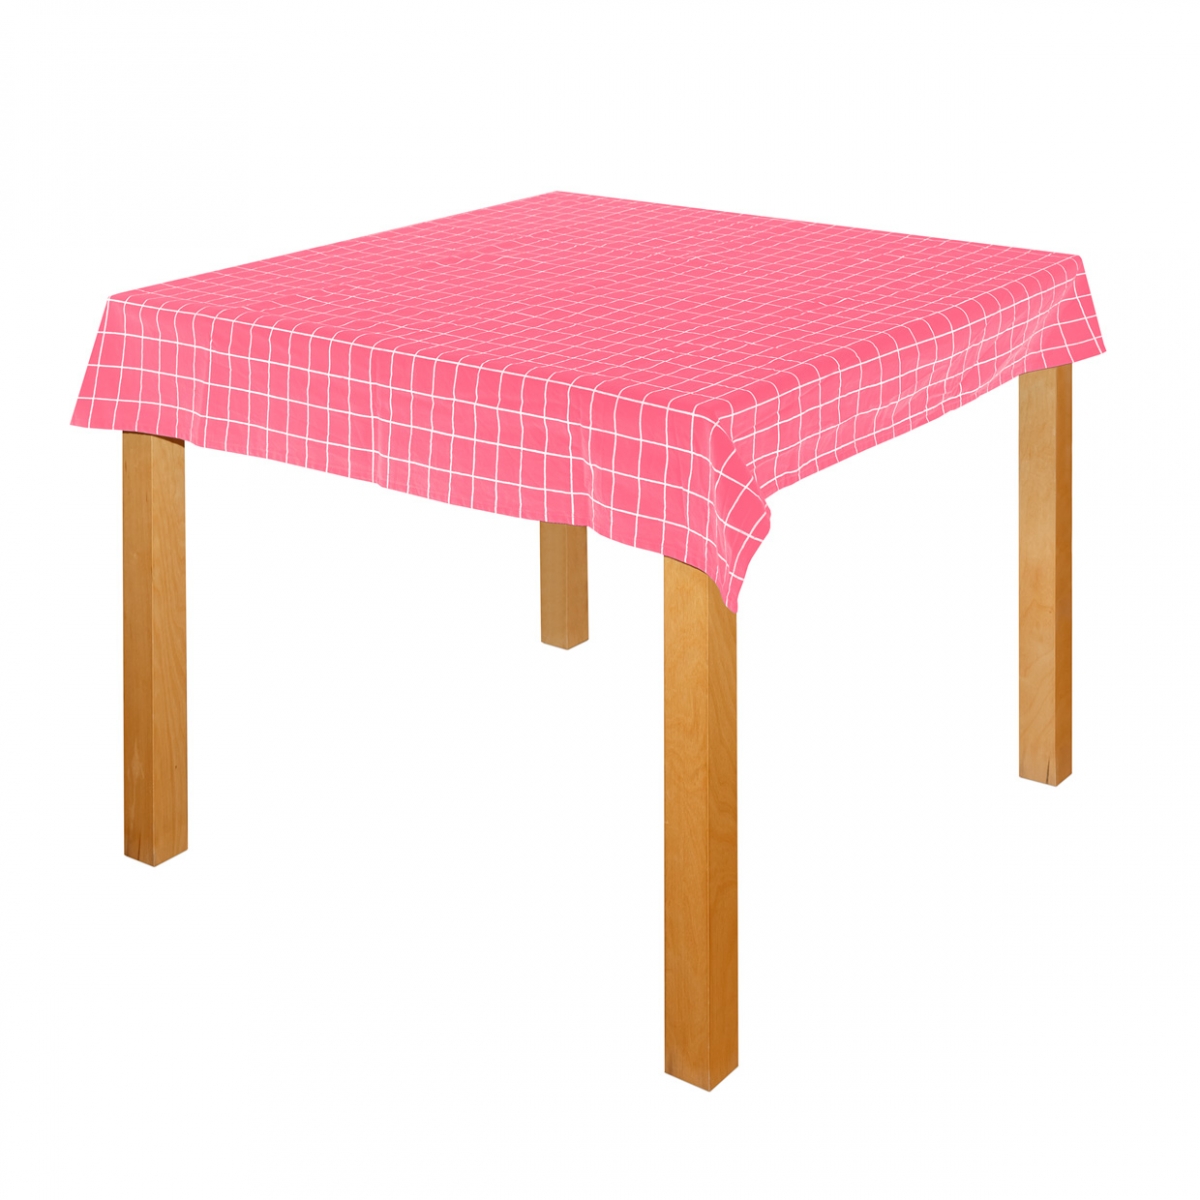 Imagen en la que se ve un mantel sobre una mesa